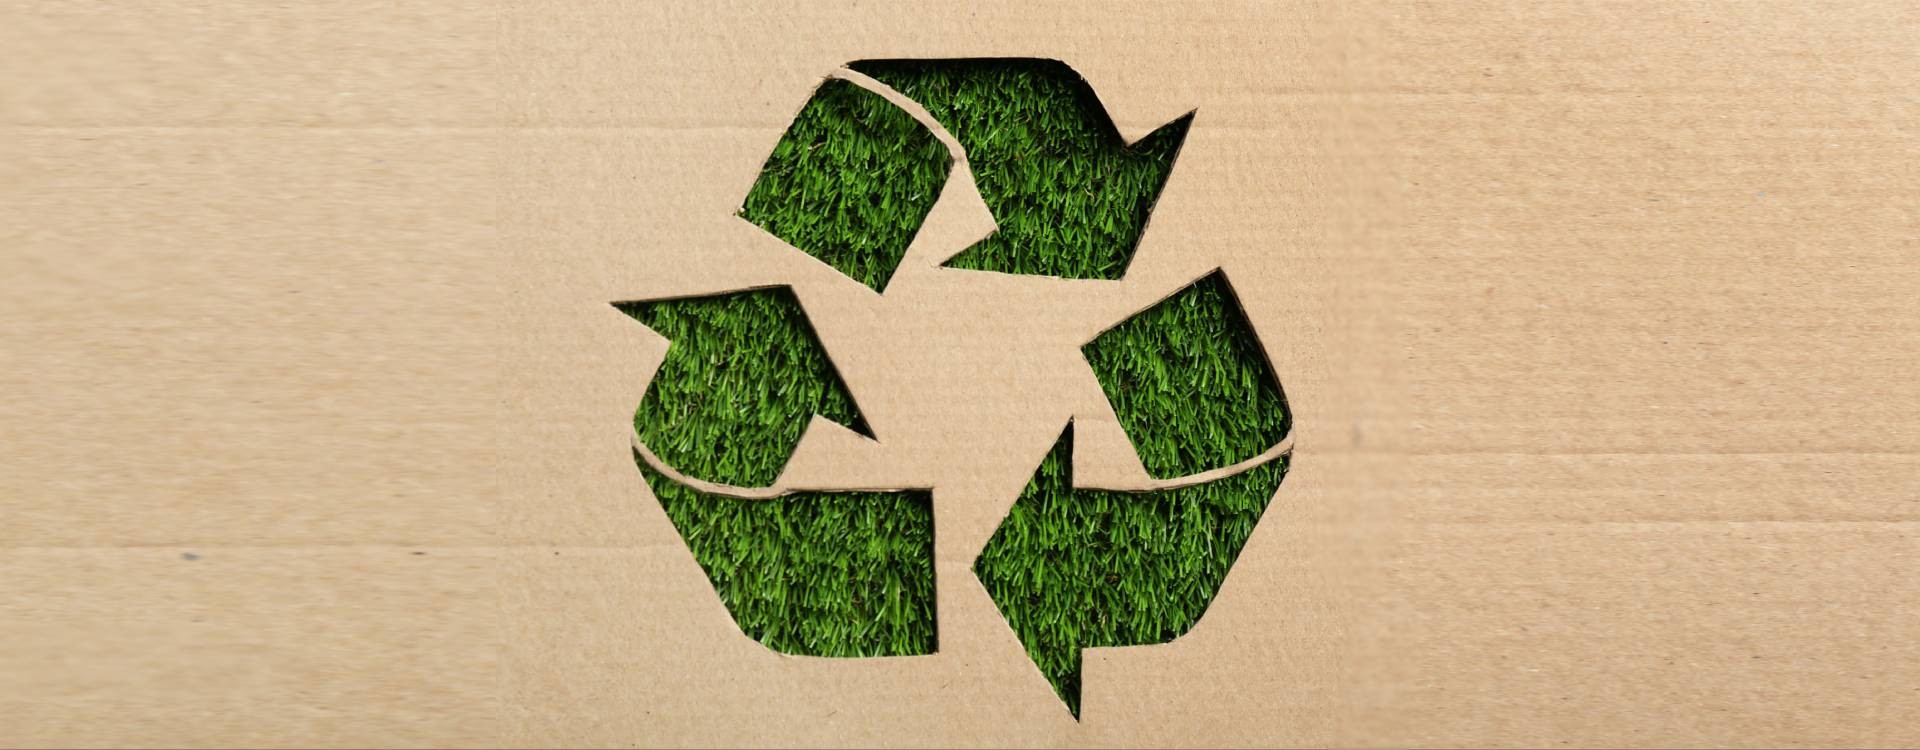 ¿Cuál es la mejor forma de reciclar cajas de cartón?